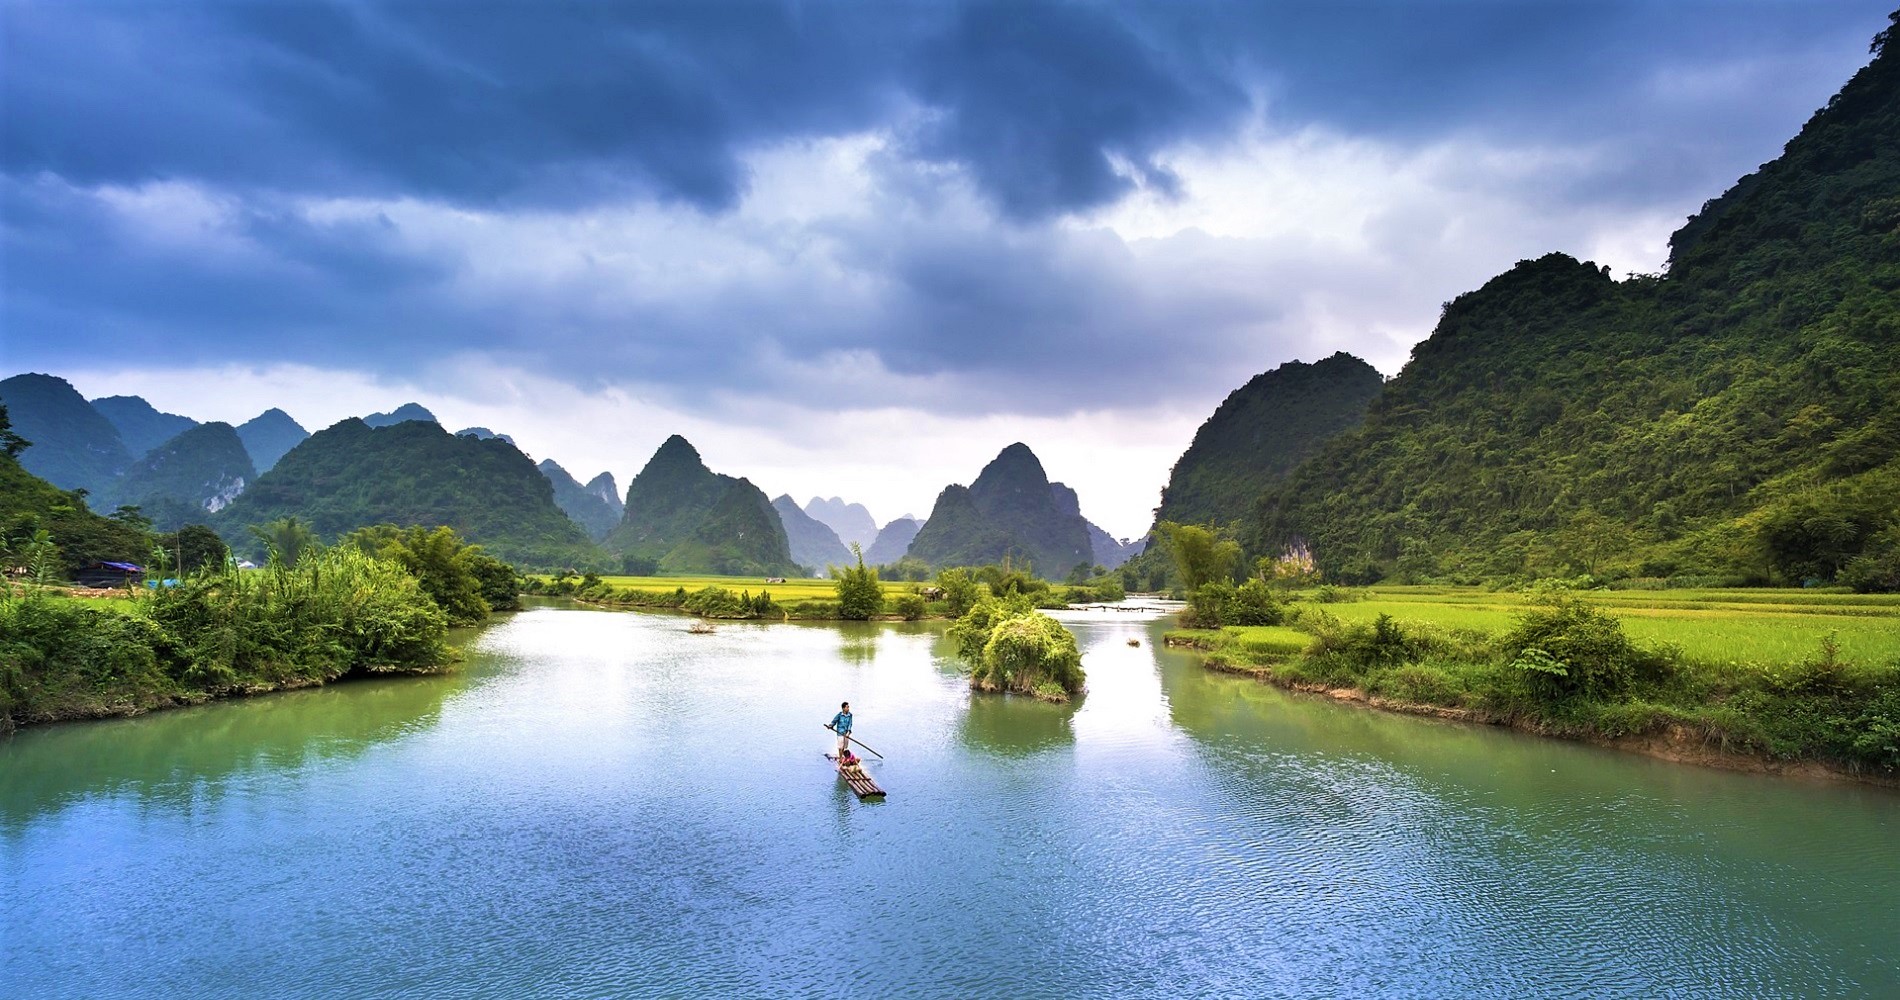 Background Image - Vietnam